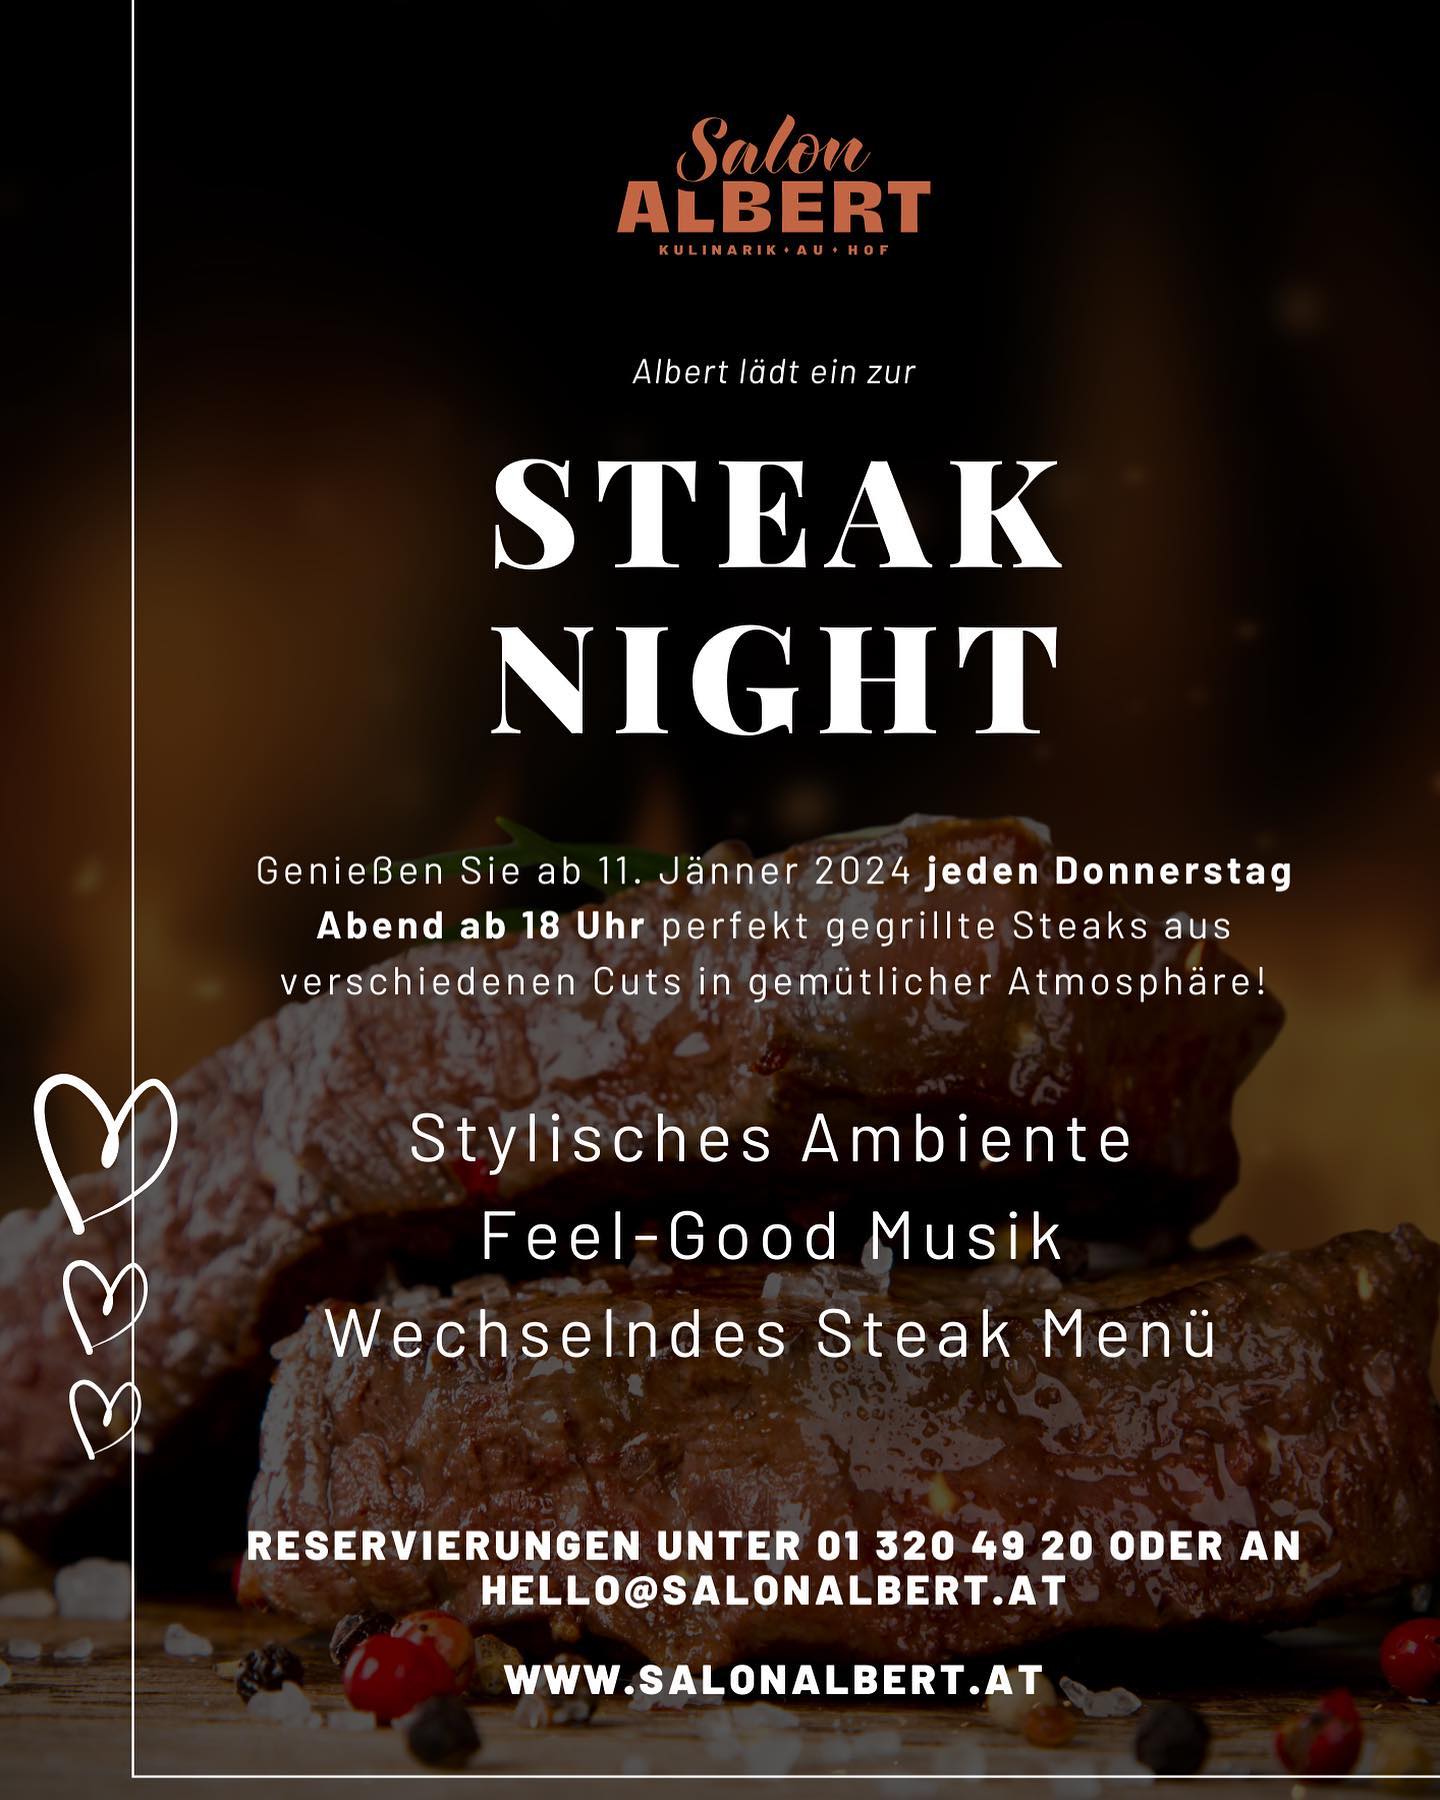 Steak Nights im Salon Albert